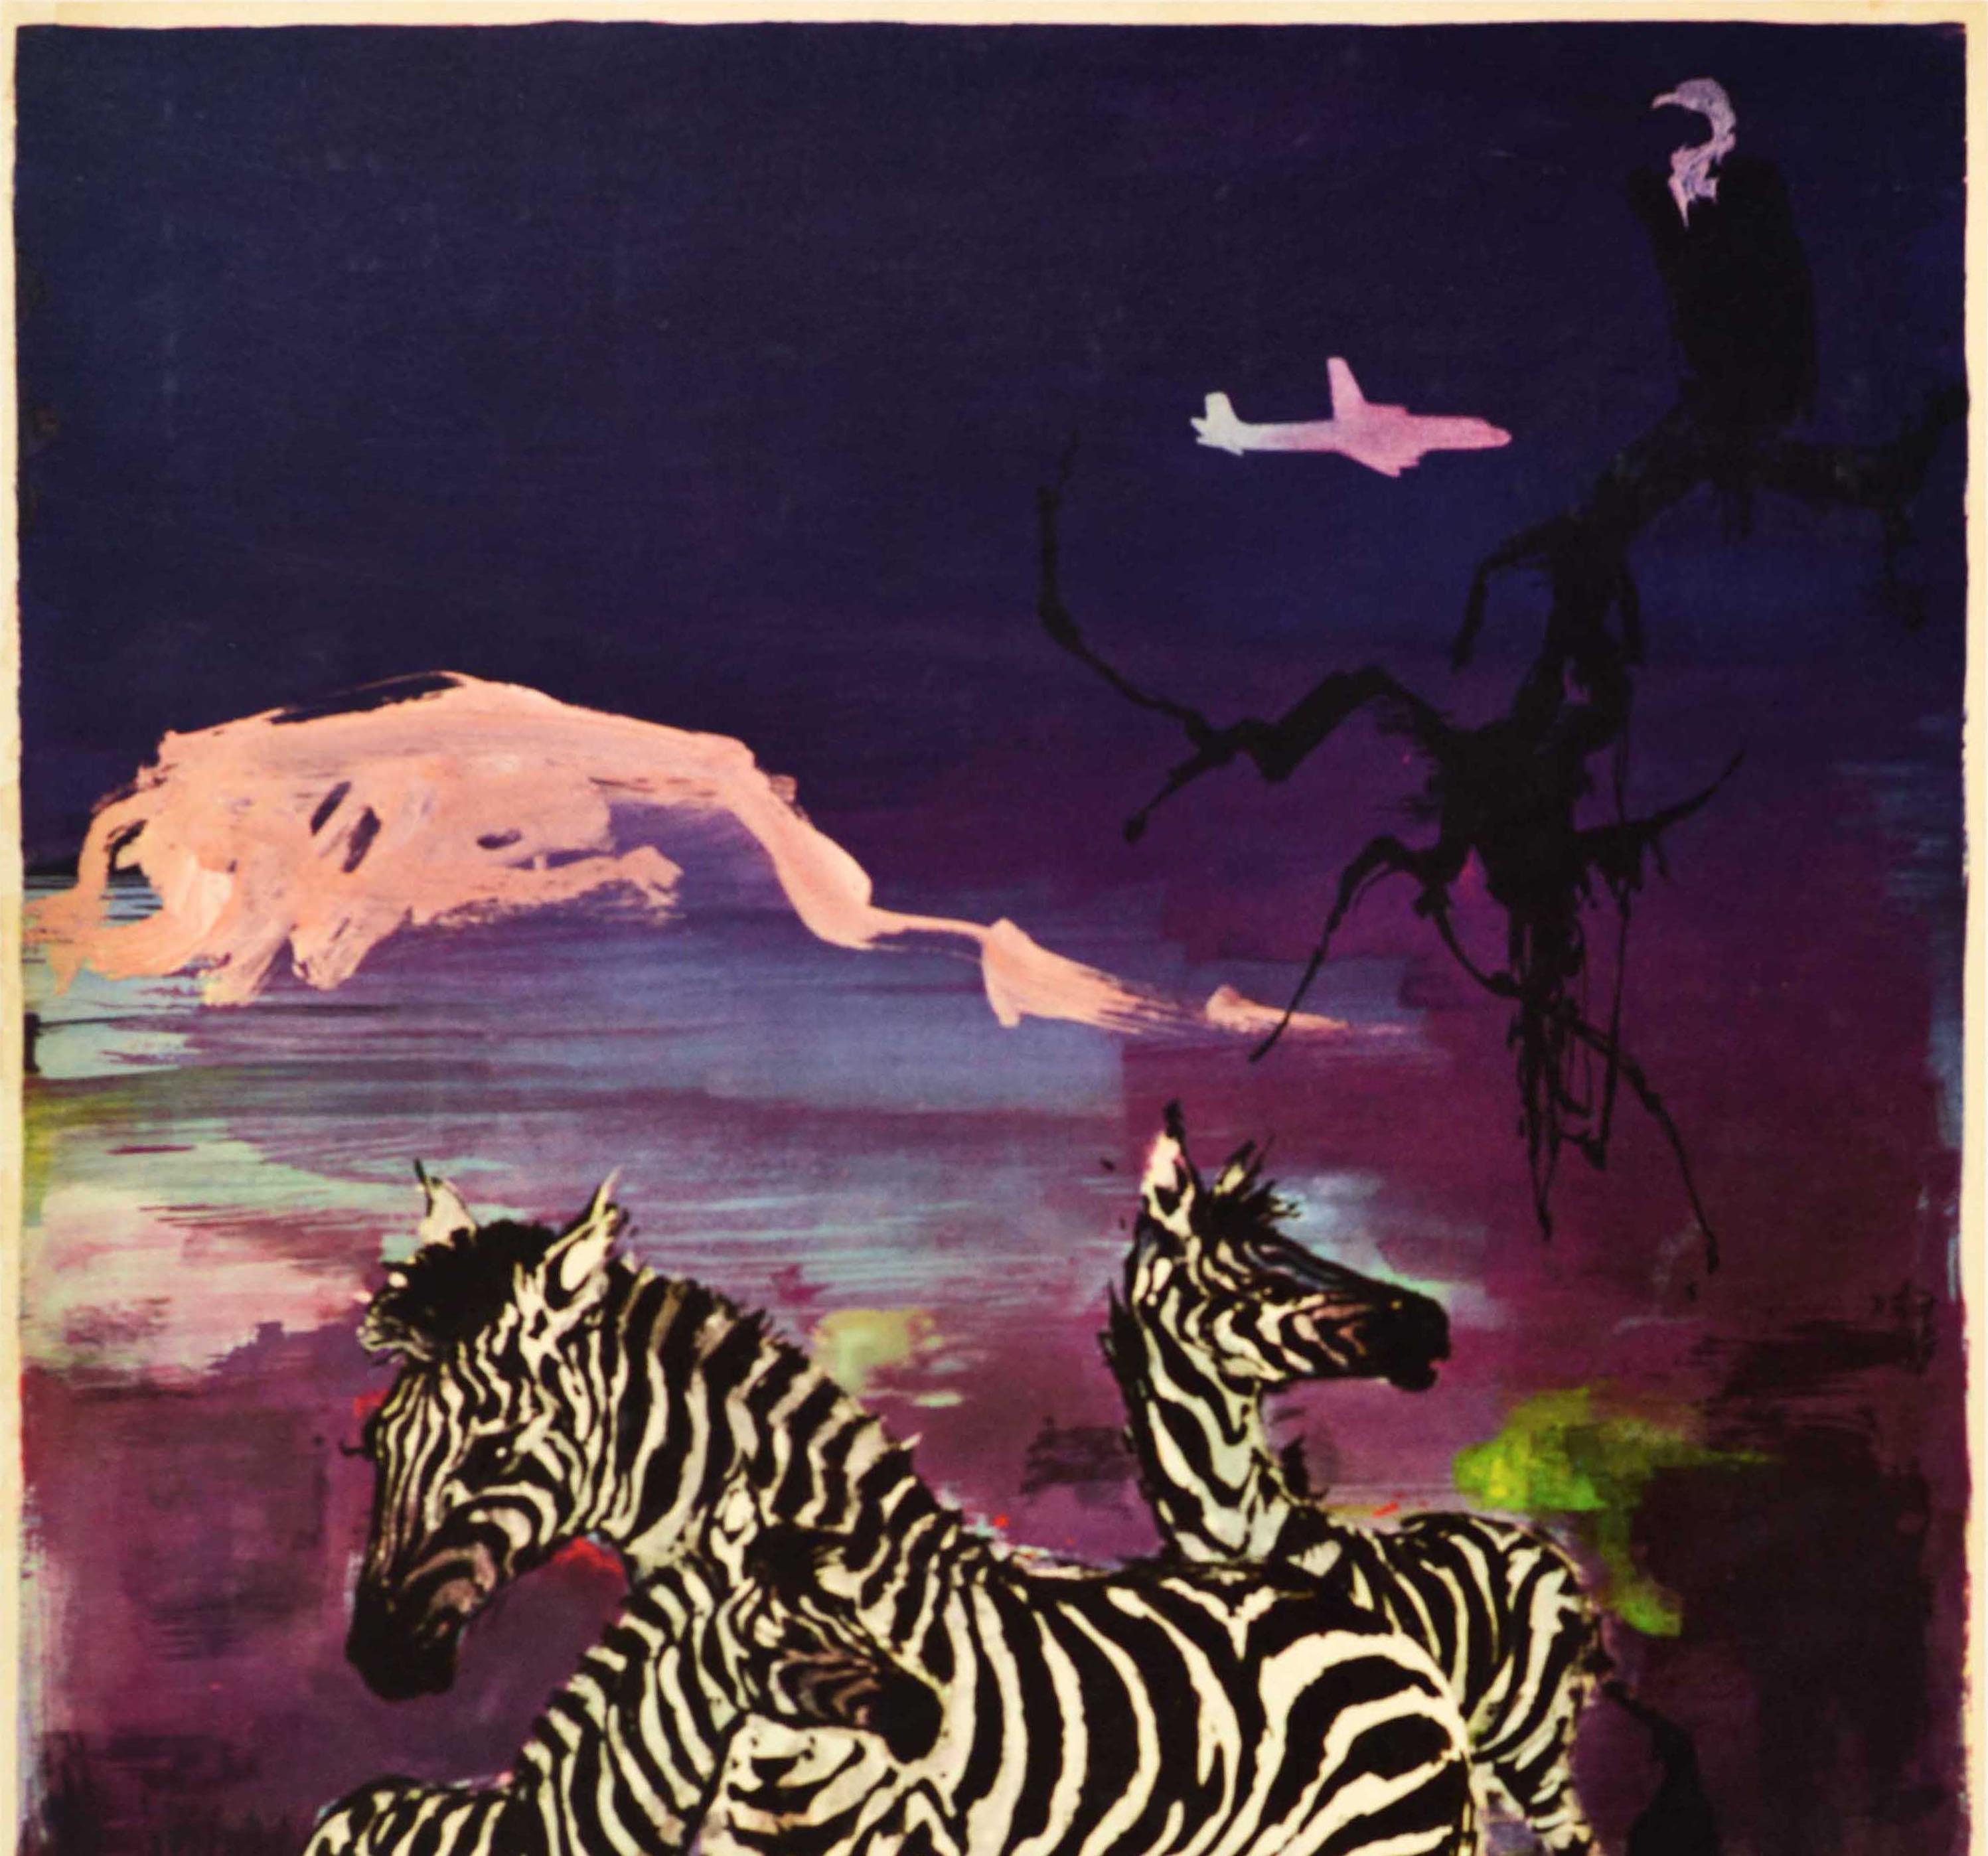 Original-Reiseplakat für Afrika, herausgegeben von SAS Scandinavian Airlines System, mit einem farbenfrohen Entwurf von Otto Nielsen (1916-2000), der Zebras vor einem violetten Nachthimmel mit einem auf einem Ast sitzenden Geier und einem in der